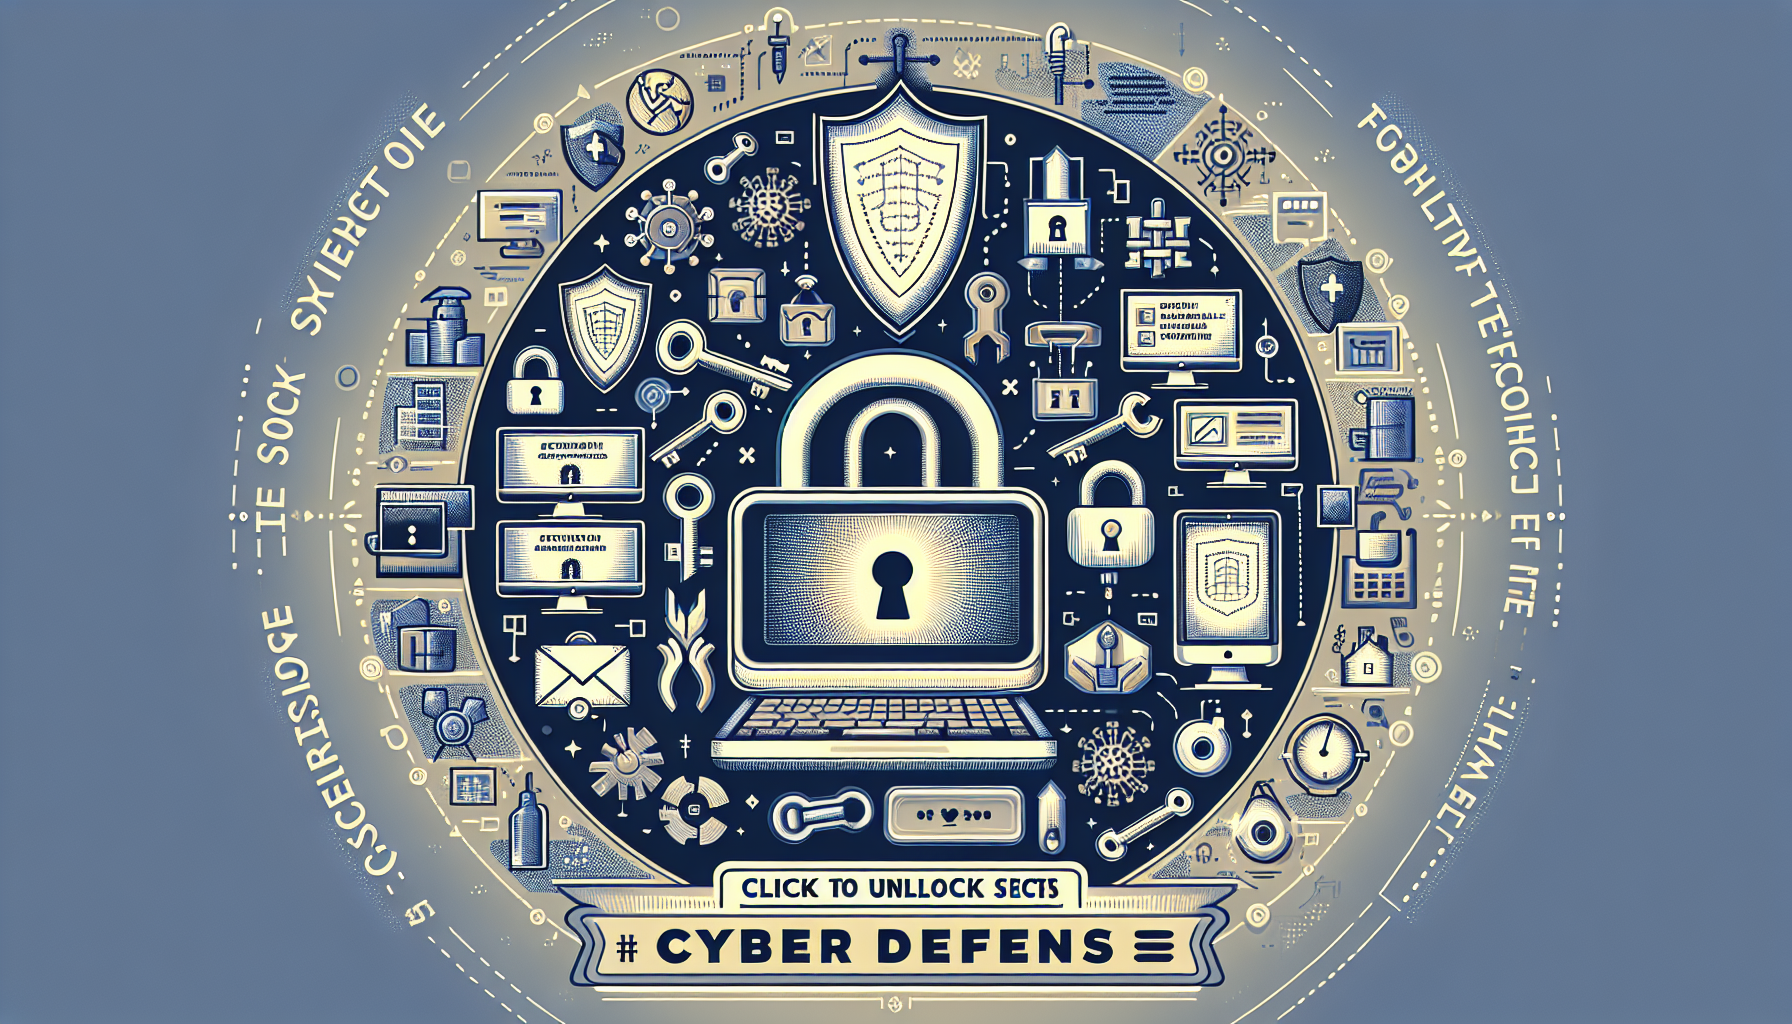 découvrez les outils et logiciels indispensables en cybersécurité avec notre formation spécialisée. apprenez à vous protéger et à protéger vos données efficacement.